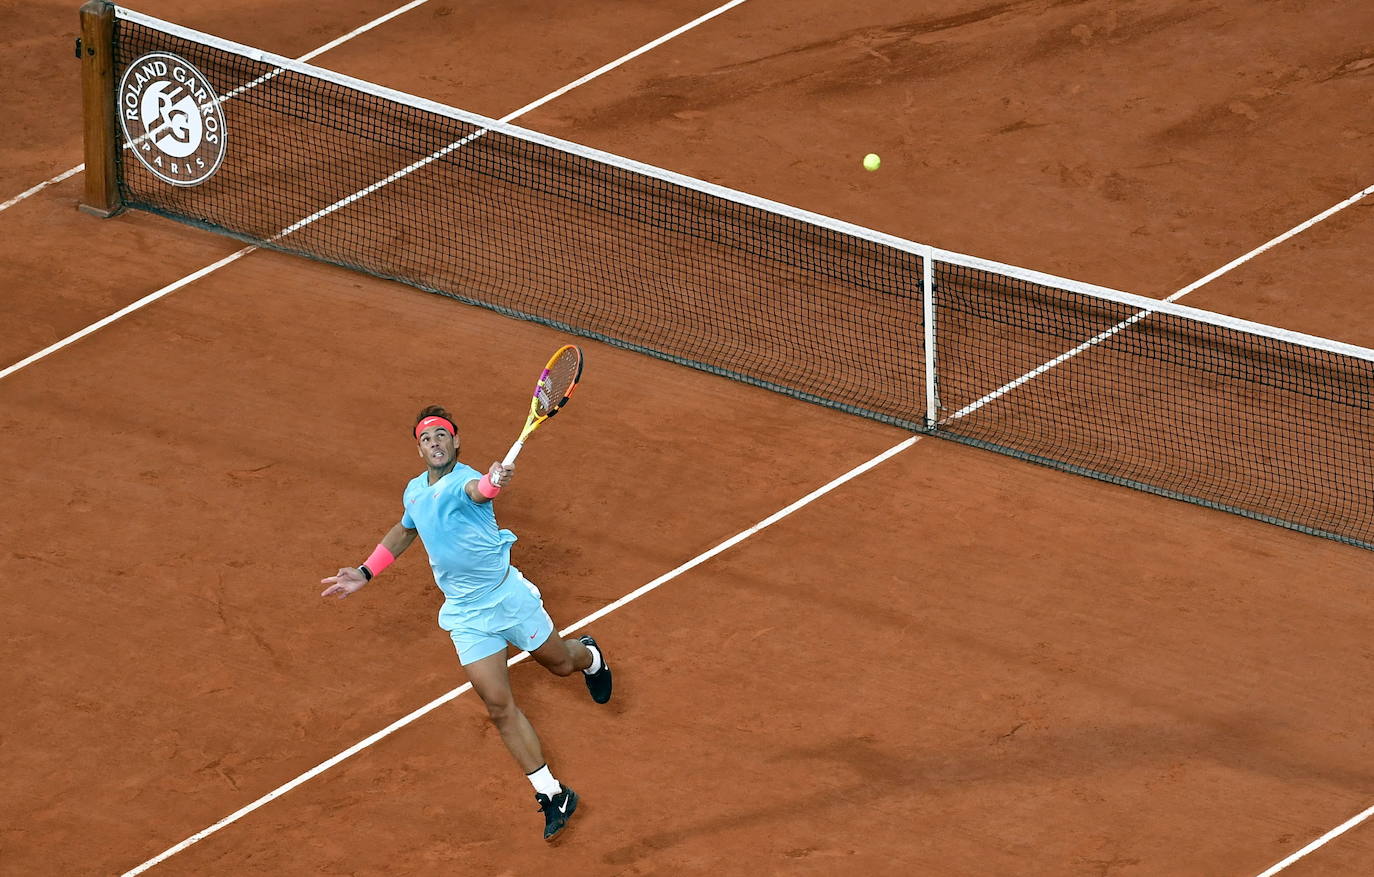 Fotos: Las mejores imágenes de la final entre Djokovic y Nadal